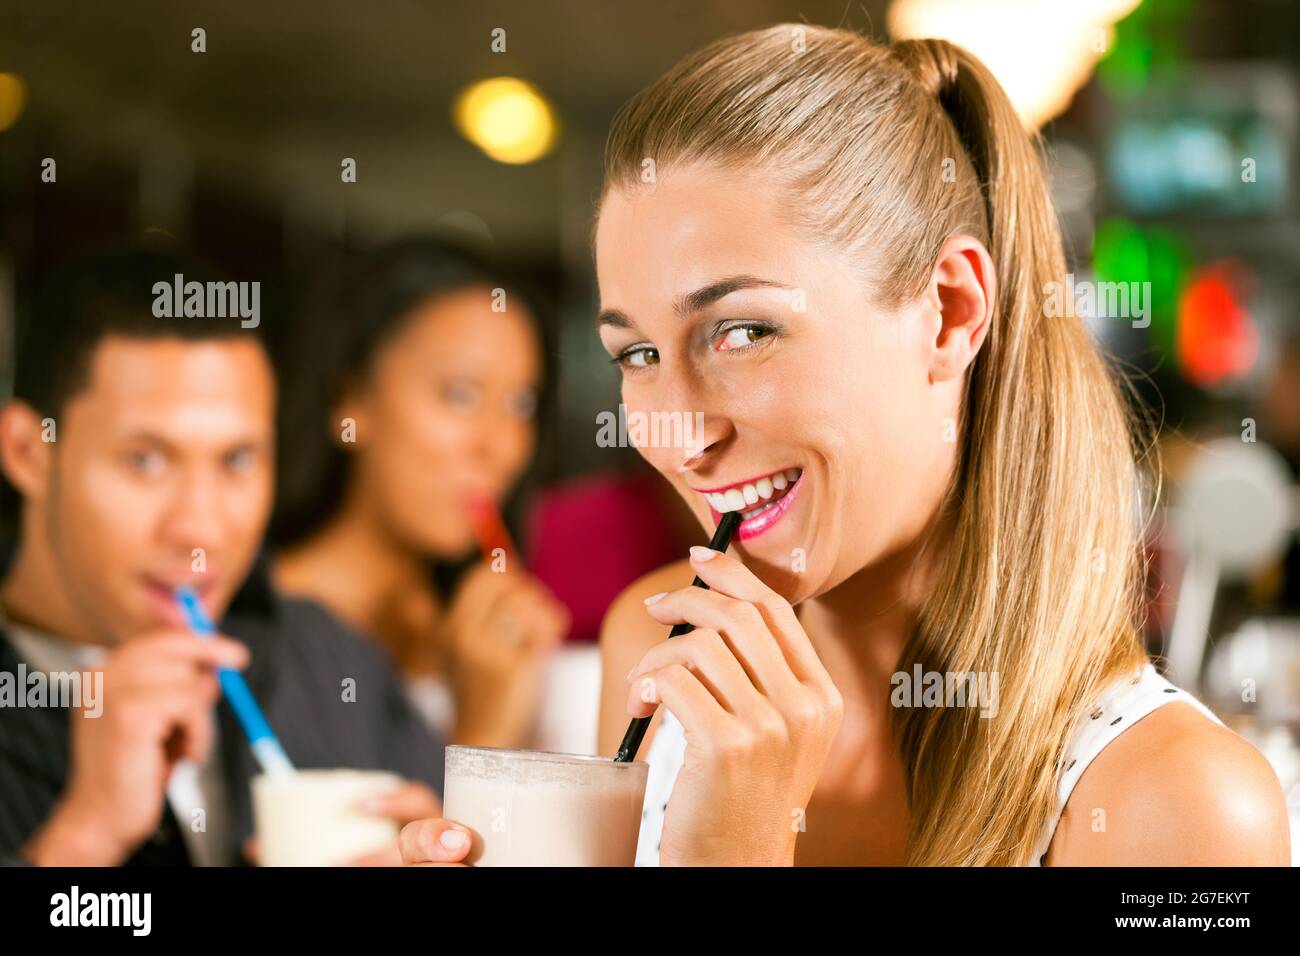 Los amigos que beben batidos en un bar y se divierten mucho; céntrese en la mujer en frente Foto de stock